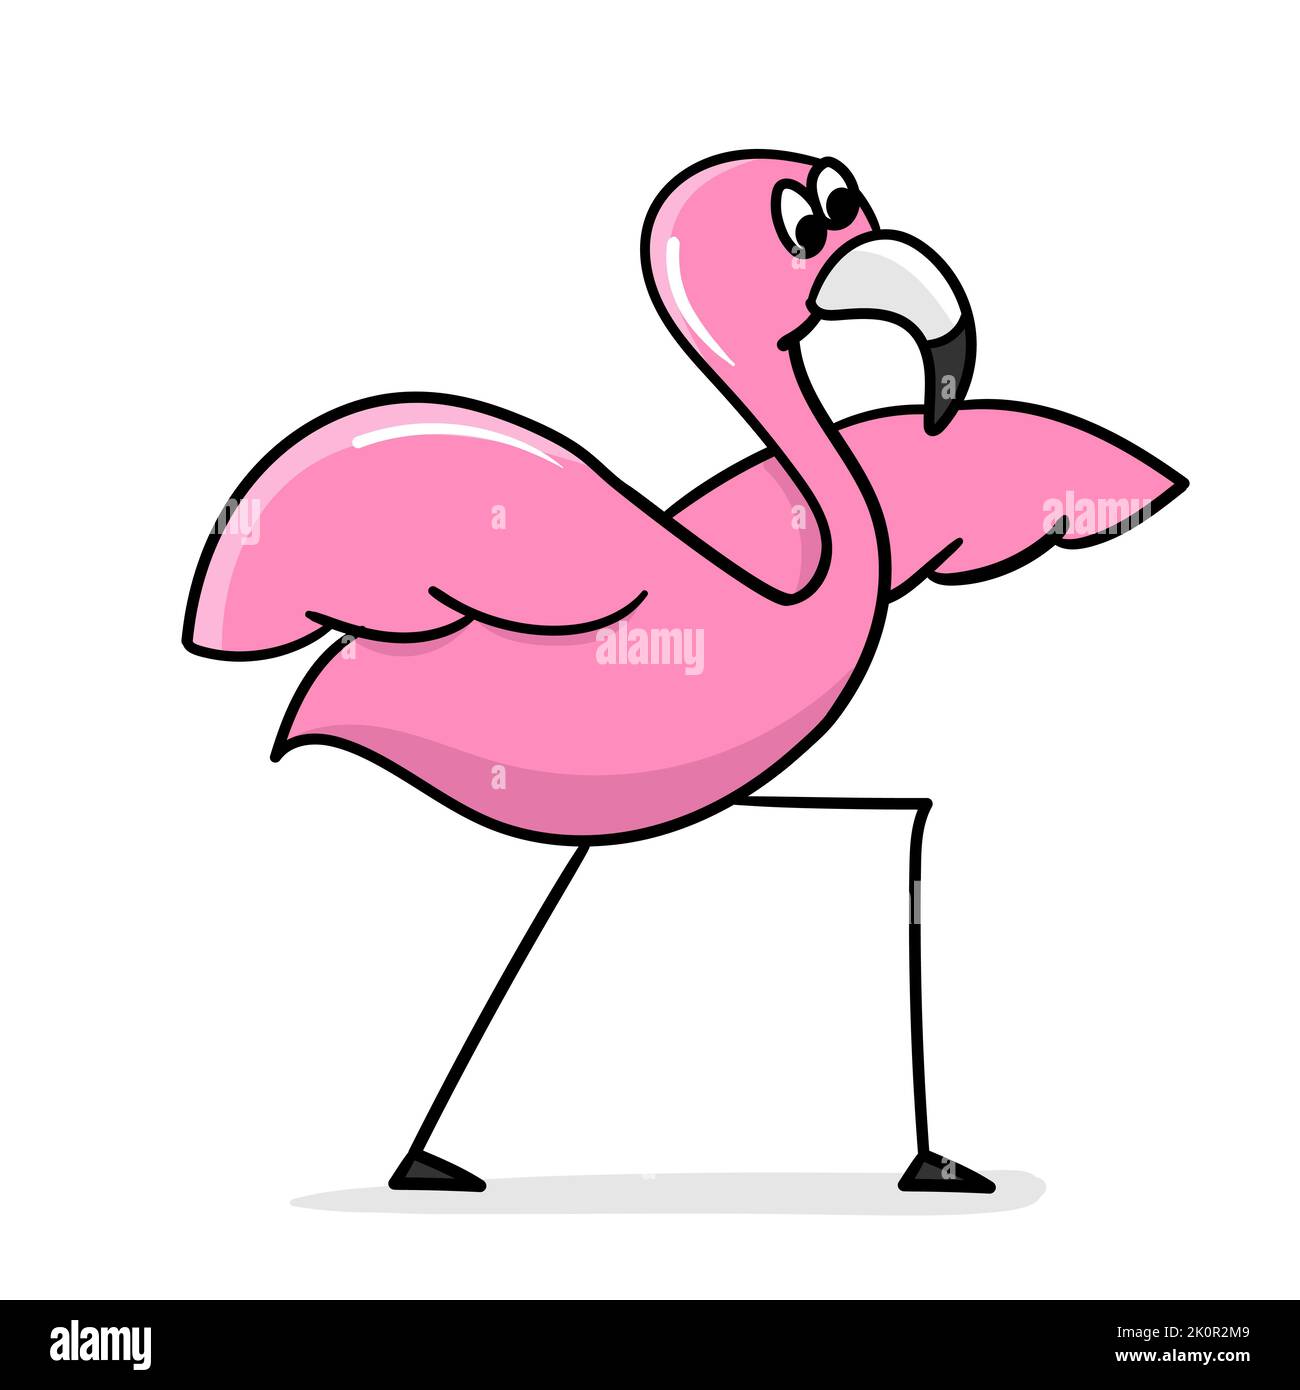 Yoga Flamingo. Dessin animé flamant isolé sur fond blanc. Vecteur. Joli oiseau en posture de yoga. Concept de sport et de mode de vie sain Illustration de Vecteur